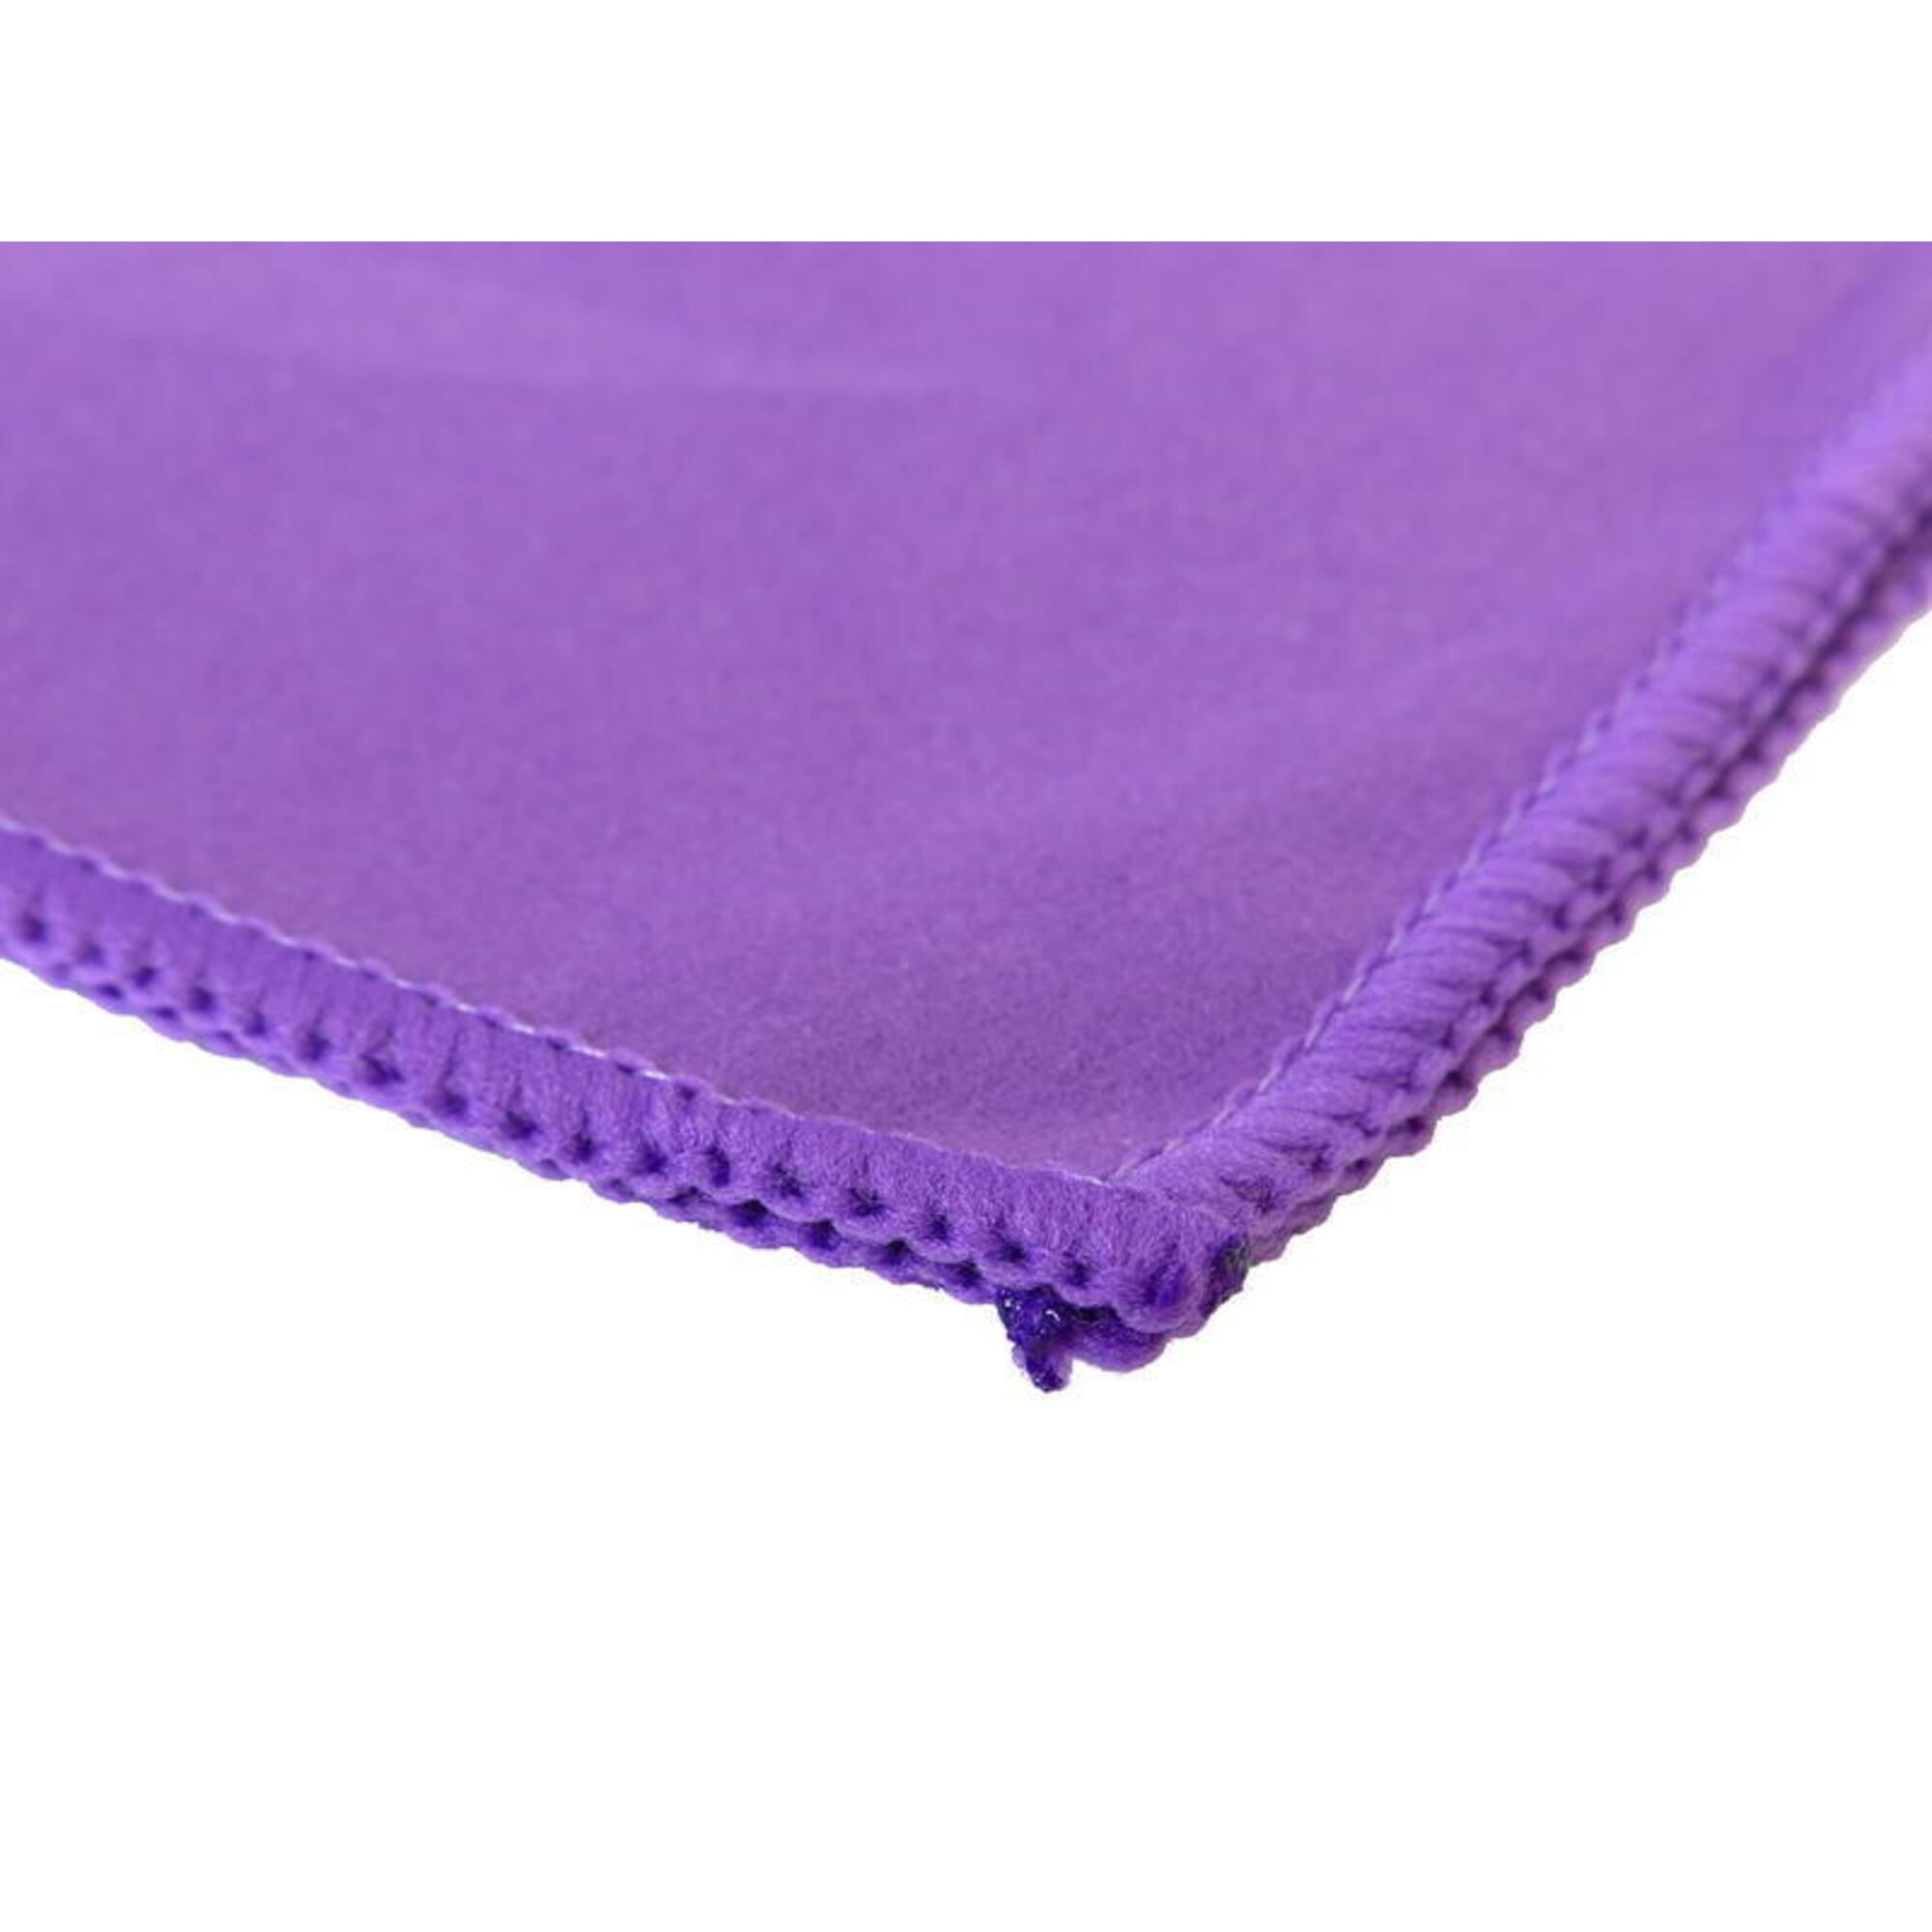 微纖吸水毛巾, 紫色